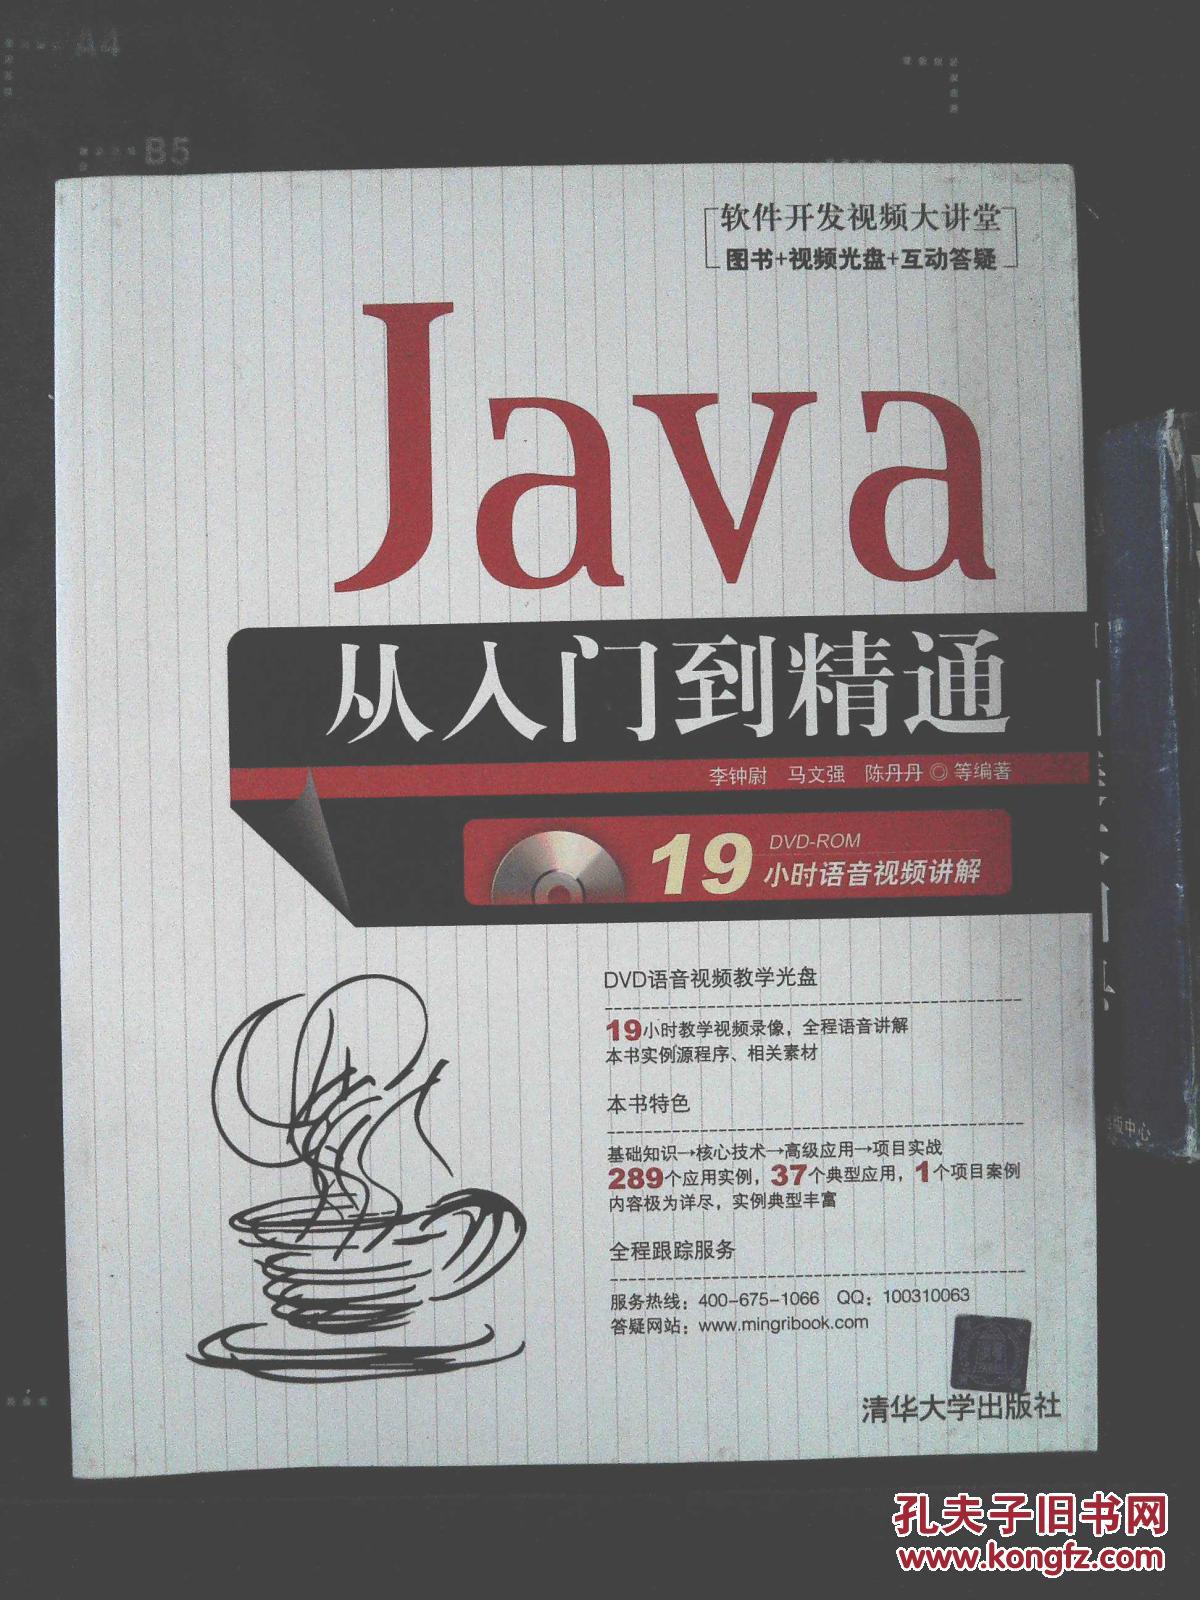 软件开发视频大讲堂:Java从入门到精通